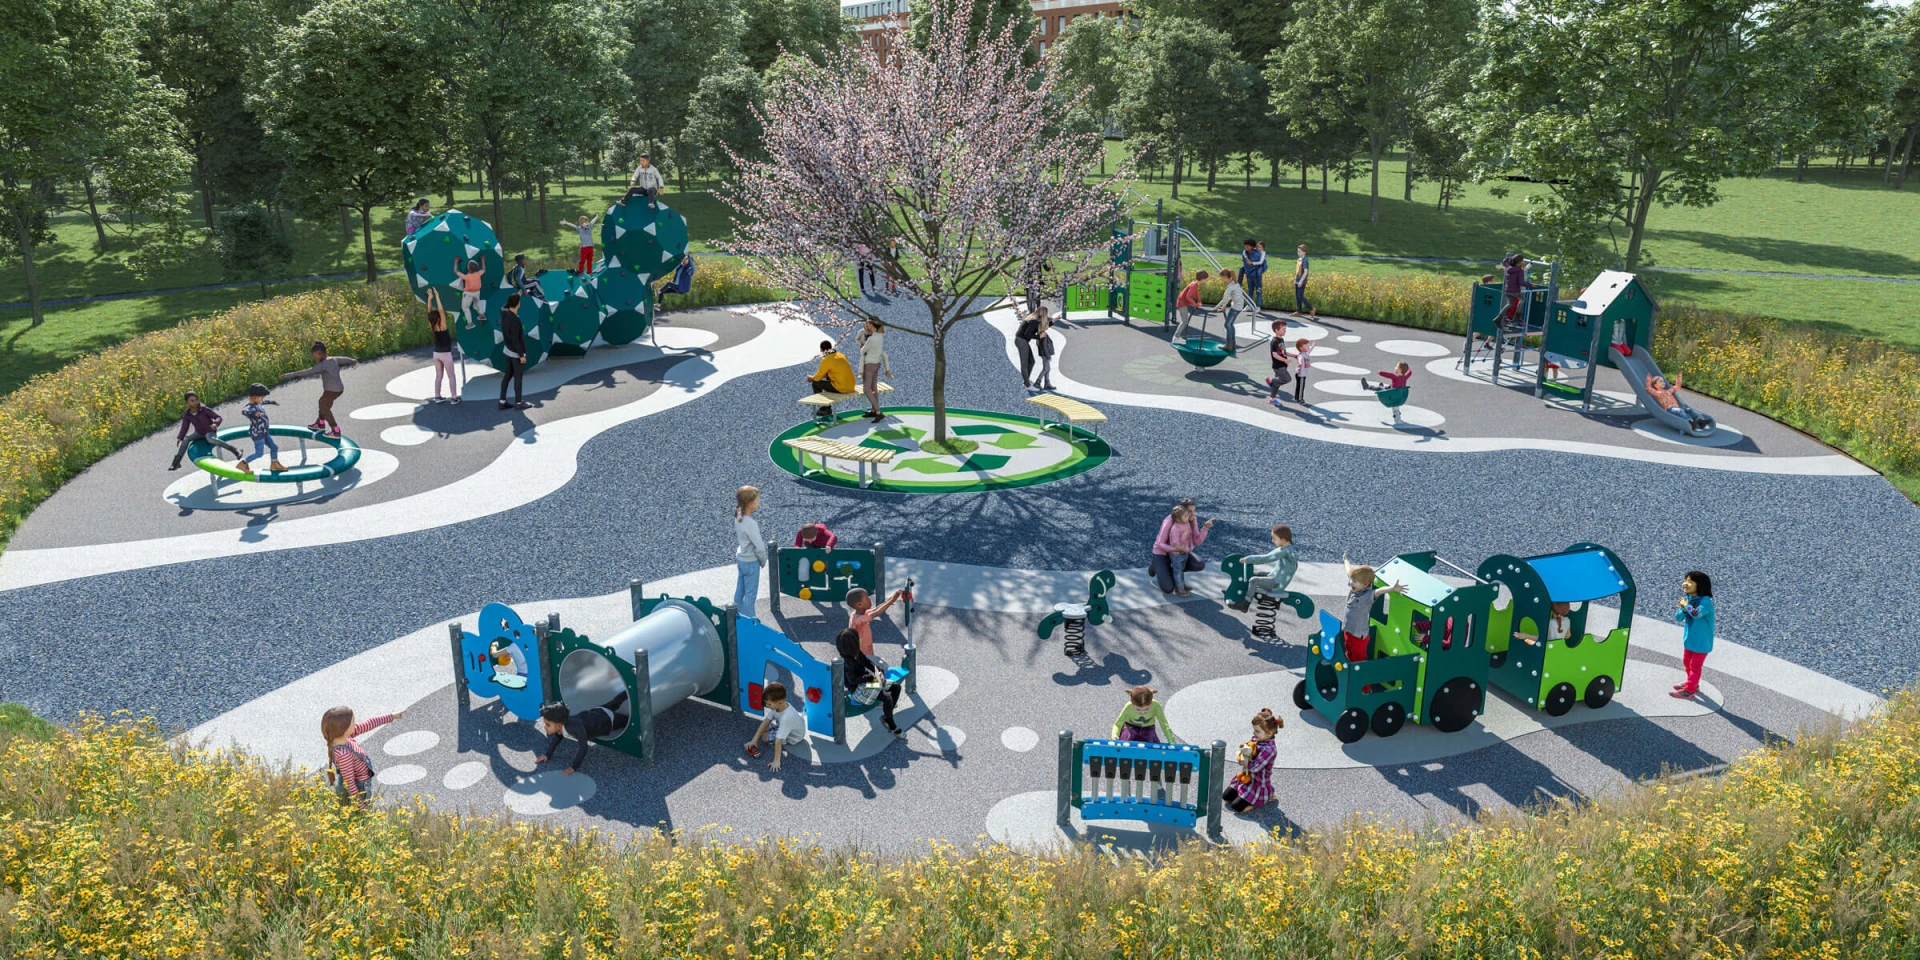 Design-Lösung eines kohlenstoffarmen Spielplatzes in einem Park